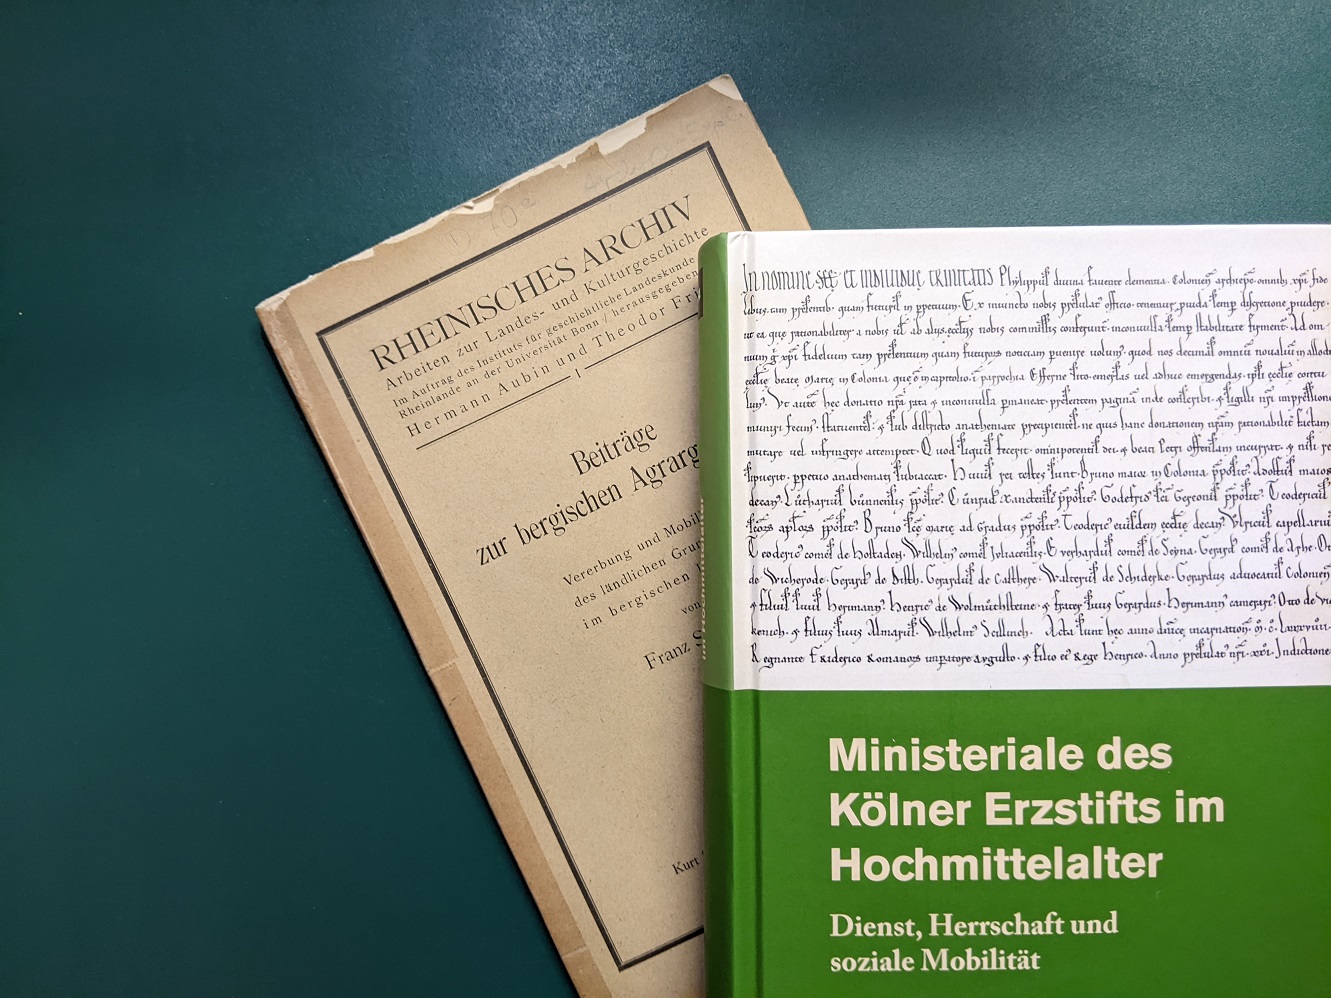 Rheinisches Archiv 100 Jahre ohne schrift_verkleinert.jpg